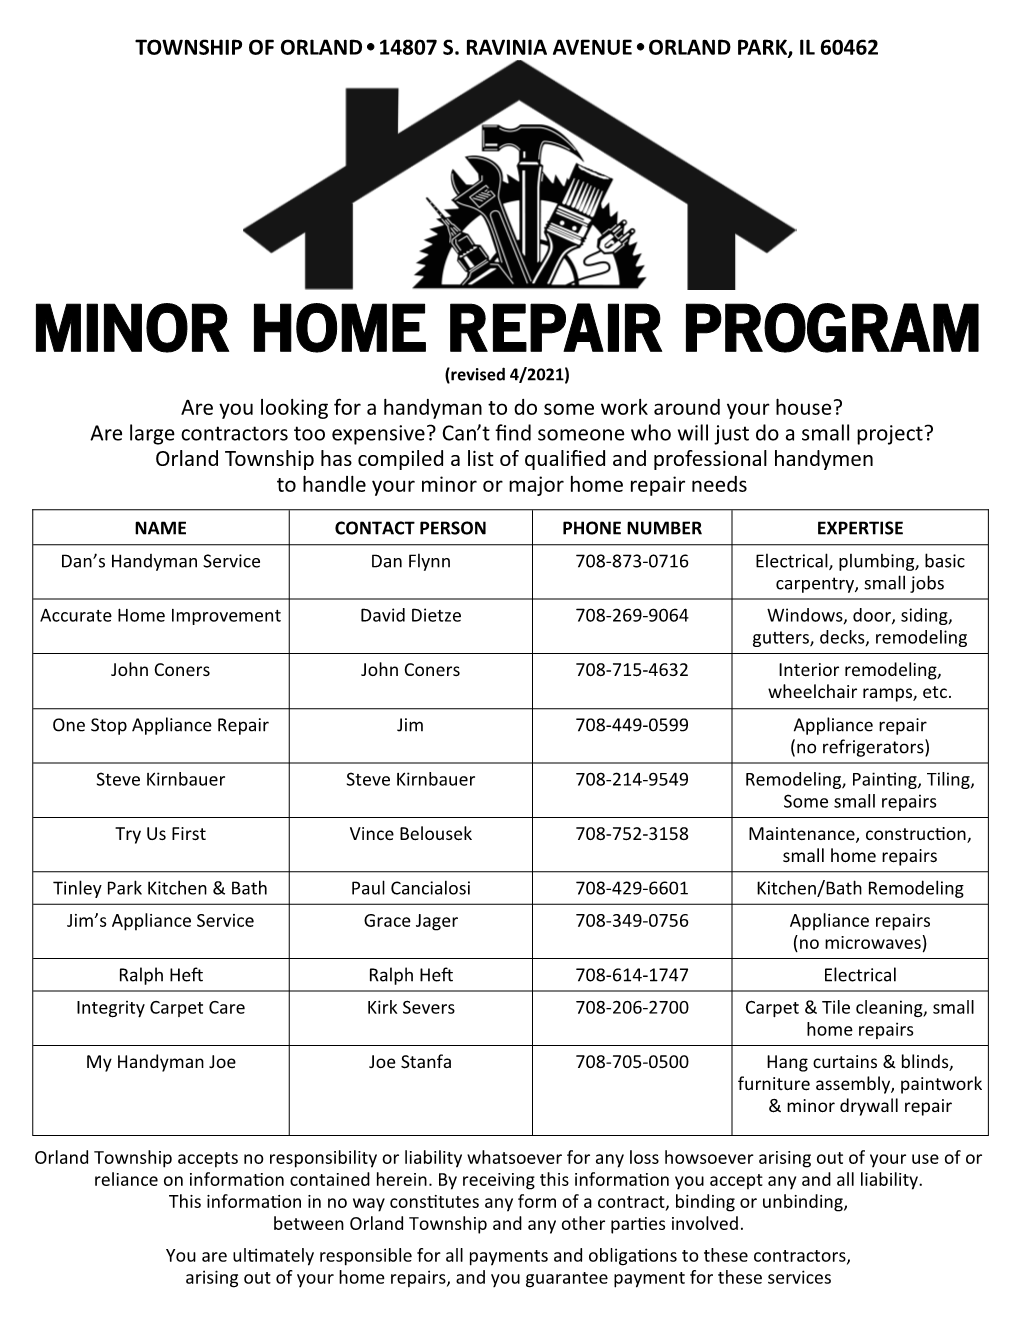 Minor Home Repair Program